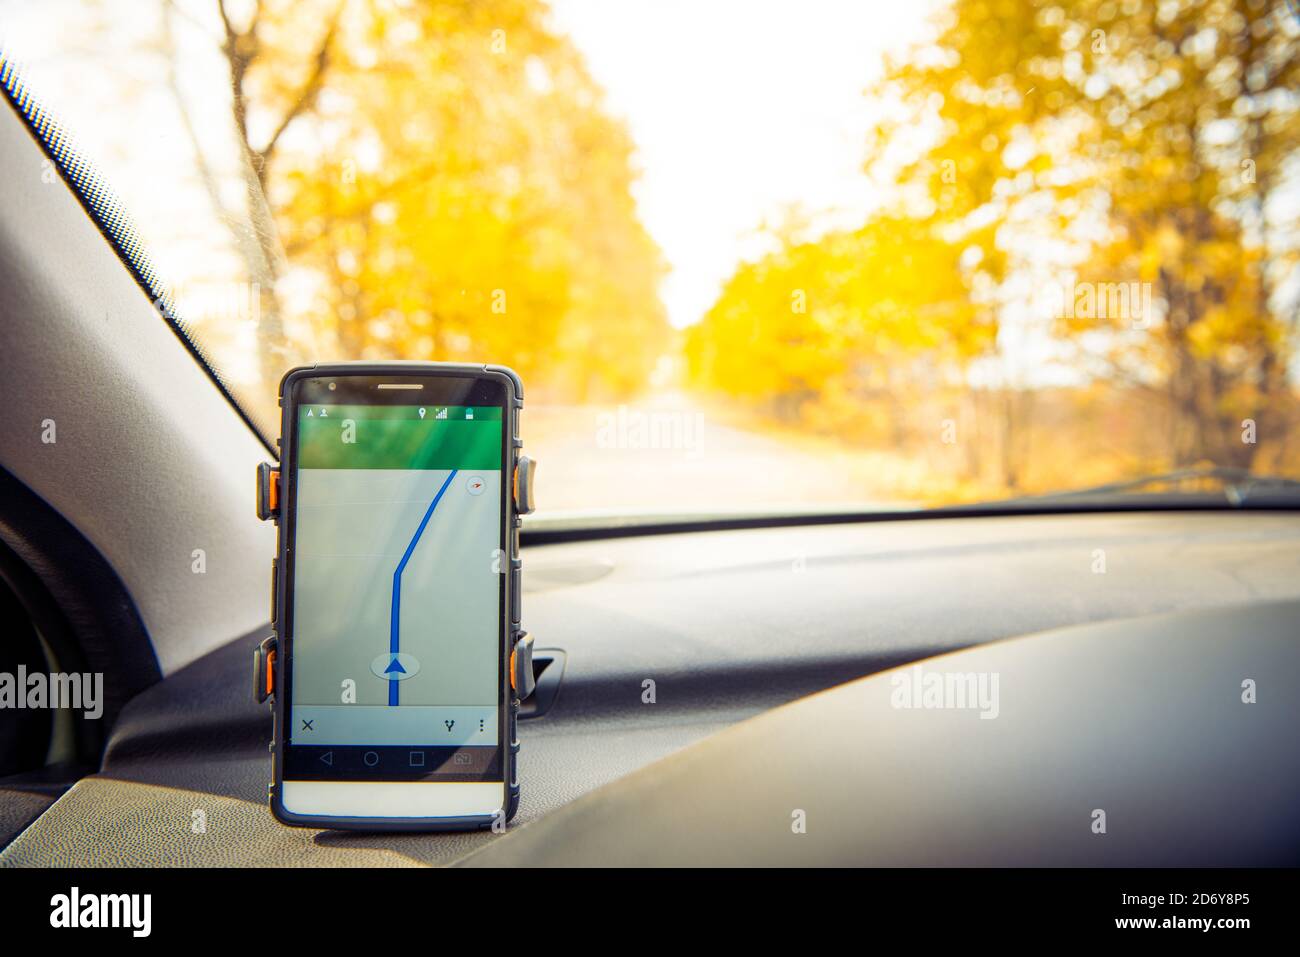 sistema de navegación telefónica que muestra la dirección en la carretera rural de la temporada de otoño Foto de stock